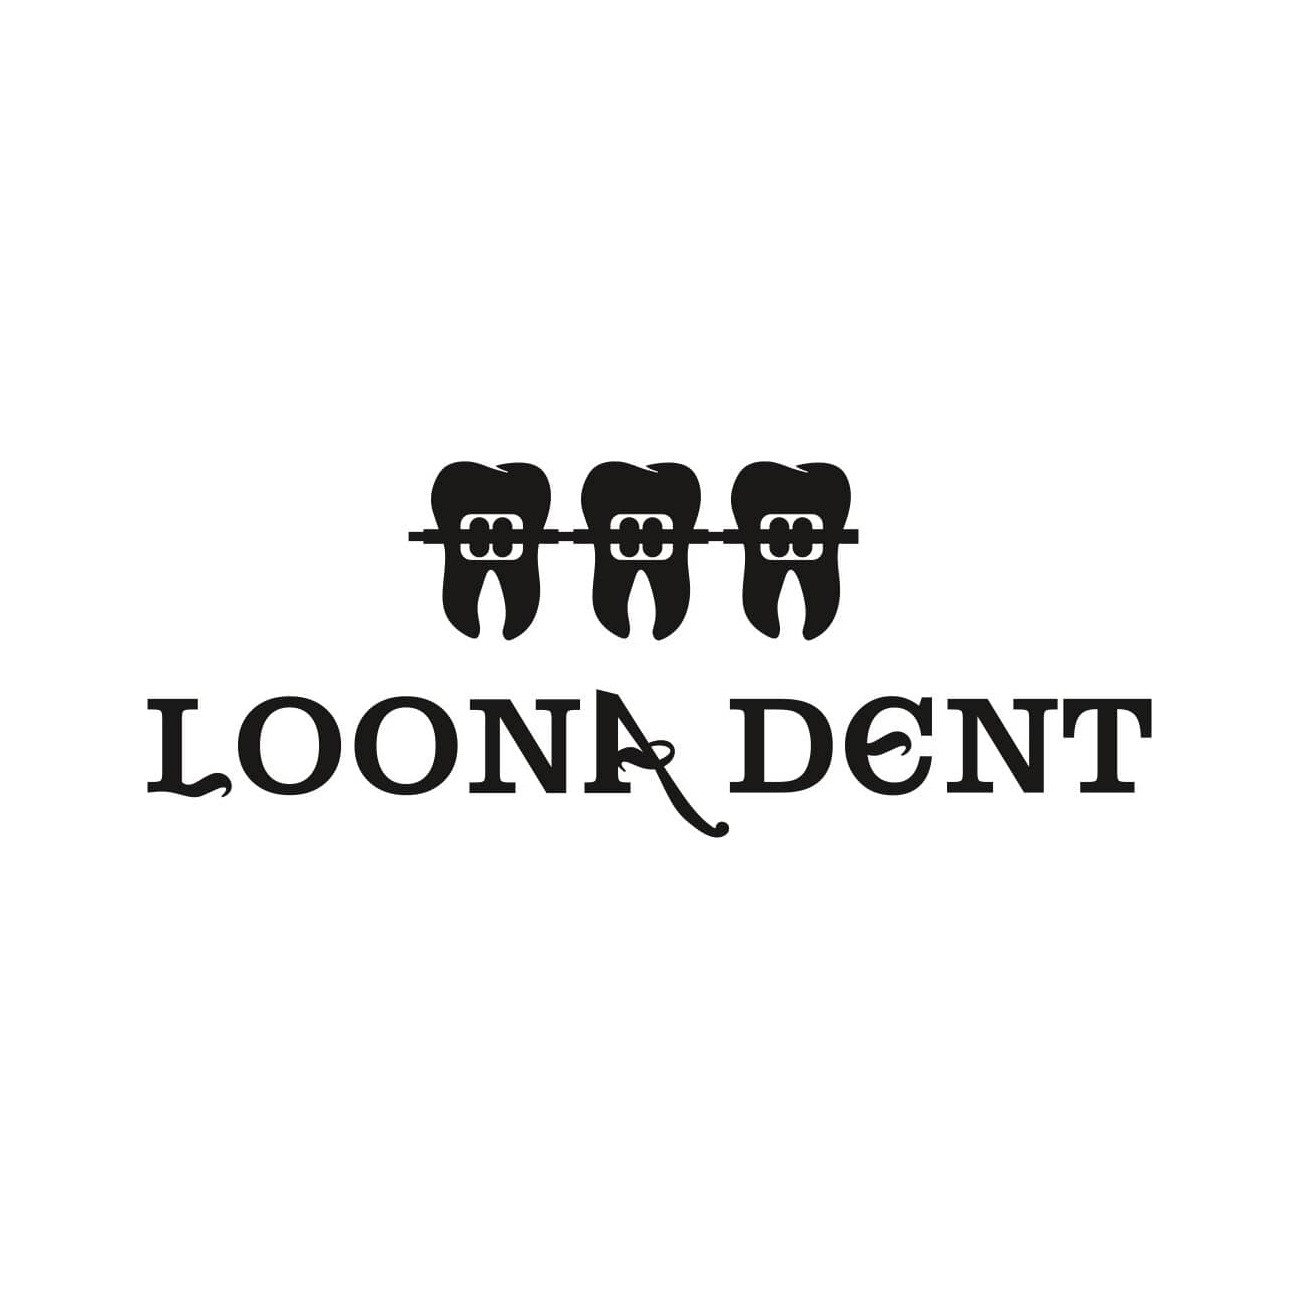 Стоматологическая клиника Loona dent